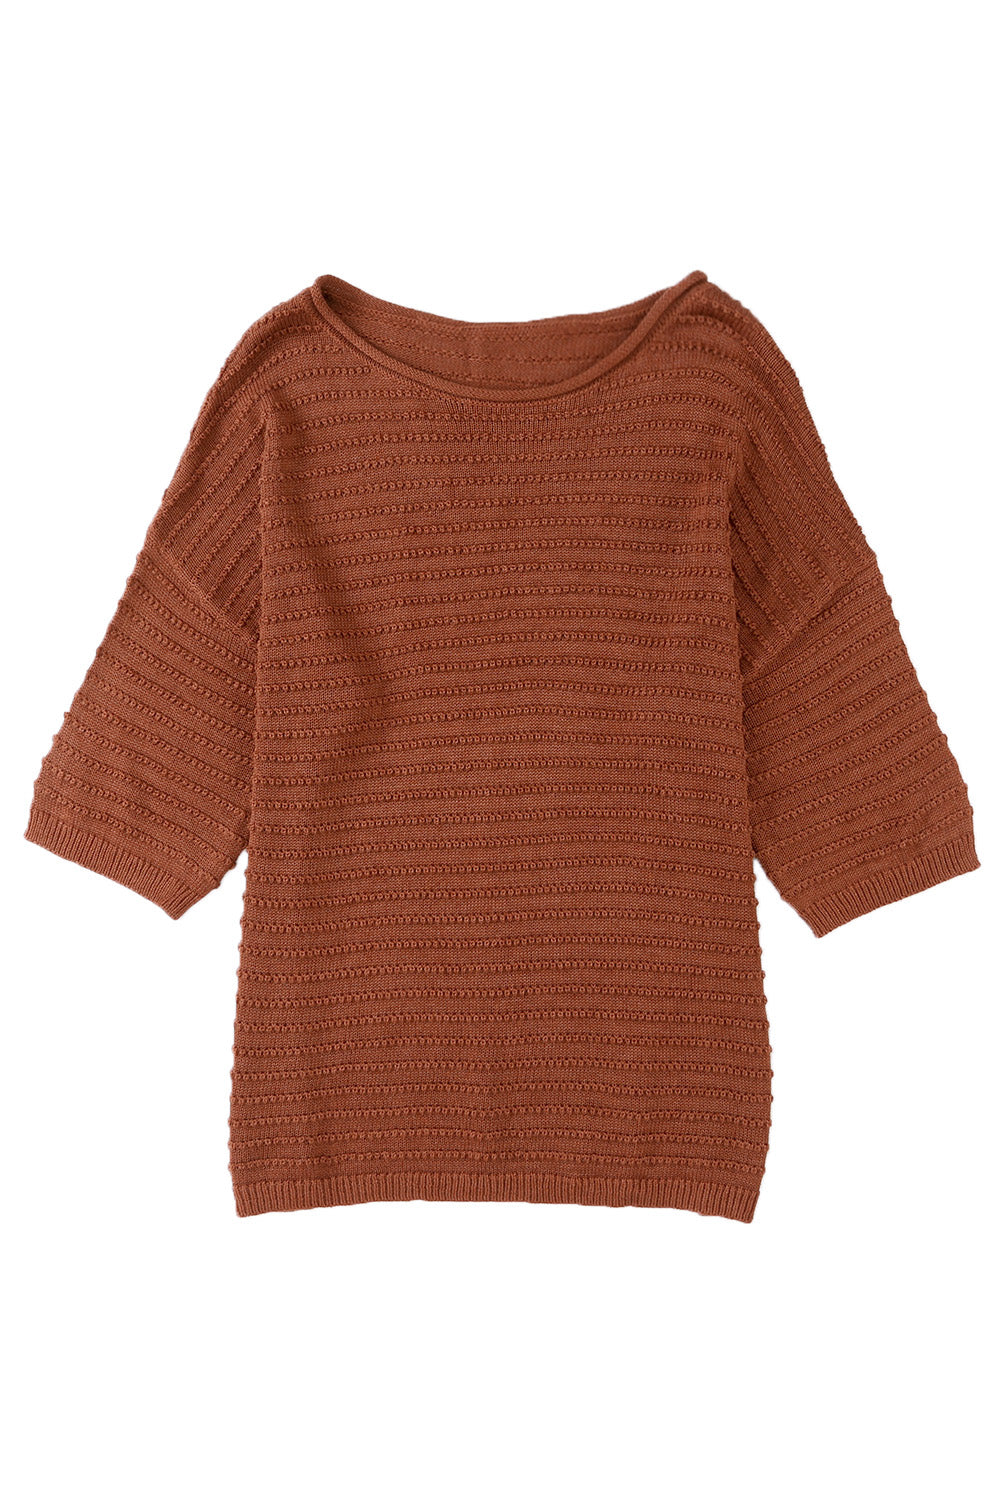 Aprikosenfarbenes, strukturiertes Strick-T-Shirt mit tief angesetzter Schulterpartie